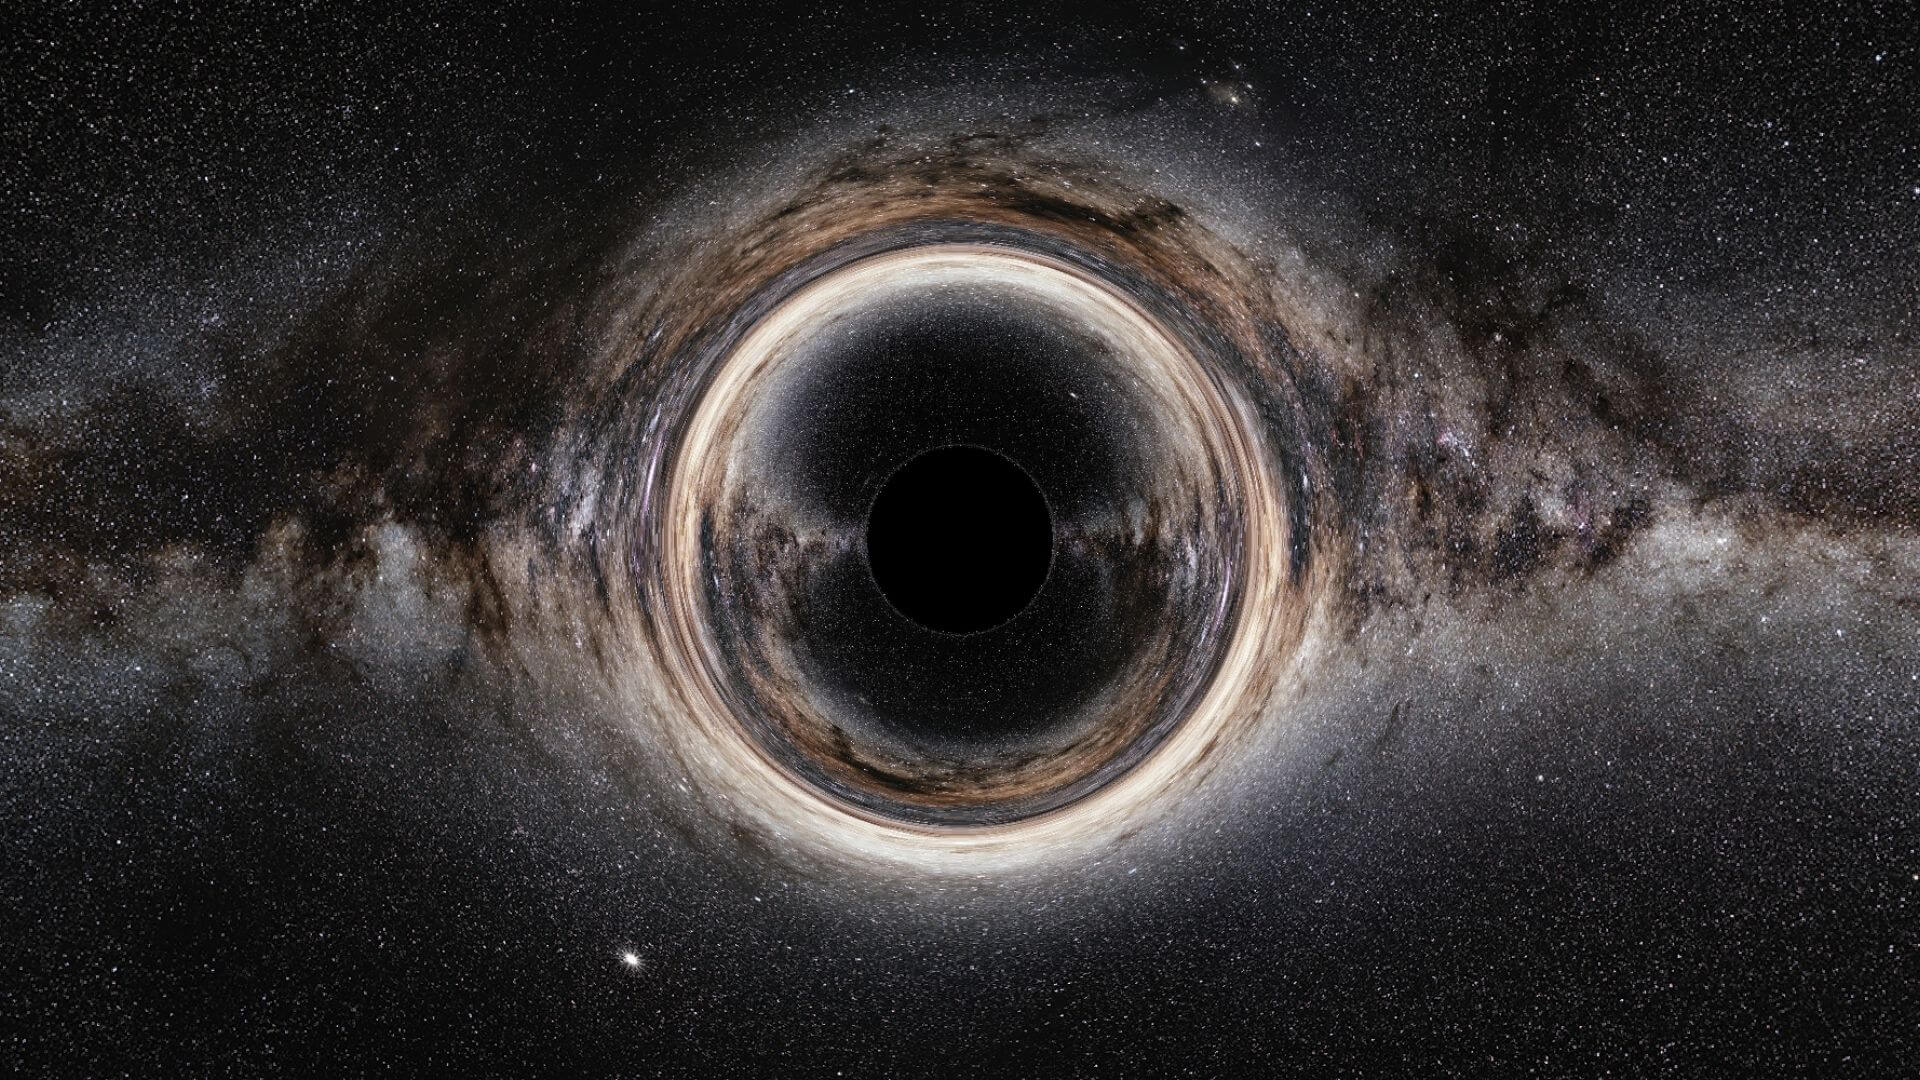 Обладают ли черные дыры квантовыми свойствами? Результаты нового исследования показали, что черные дыры обладают квантовыми свойствами. Но что это означает? Фото